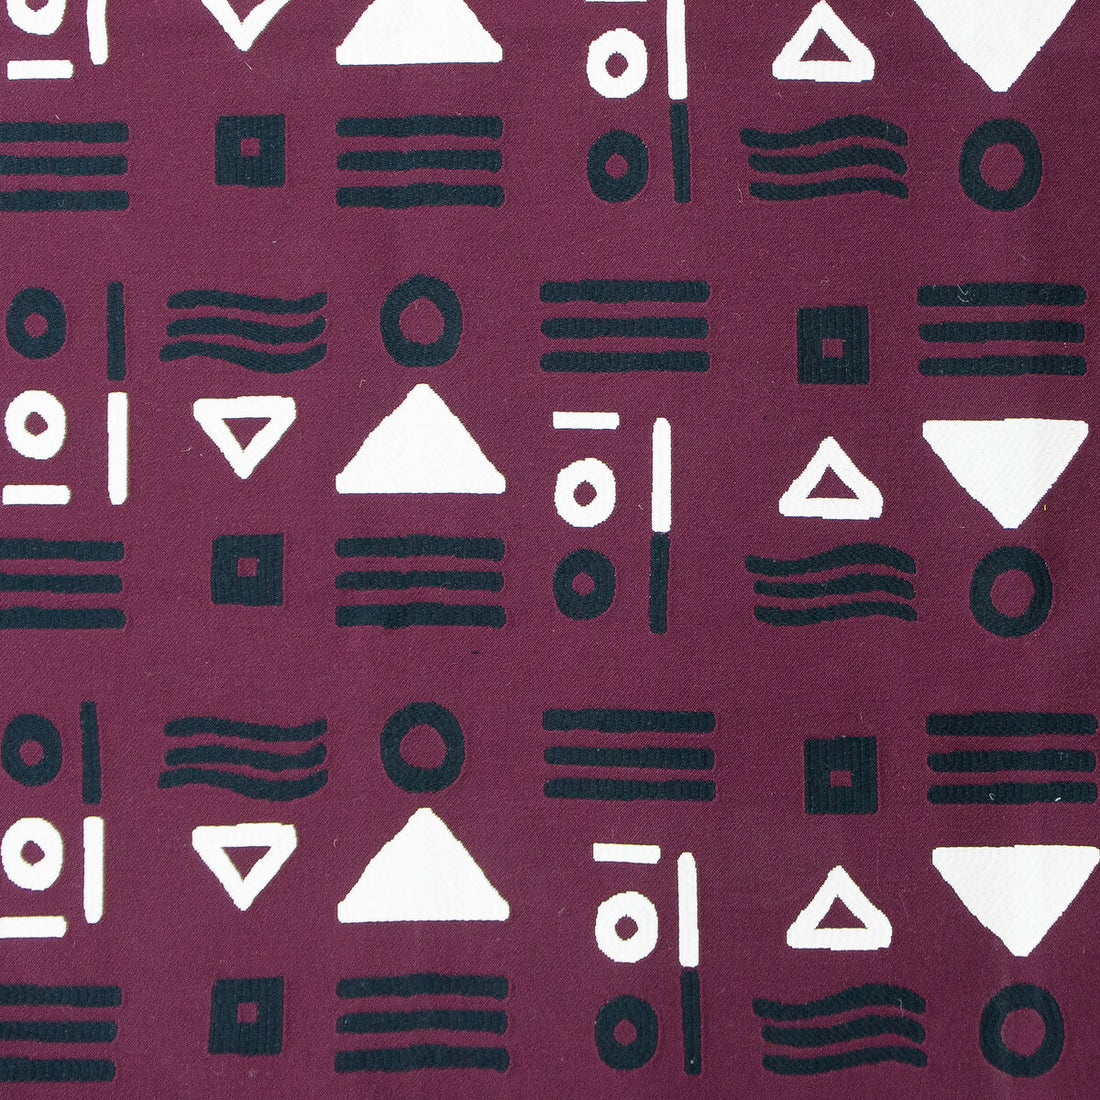 Pinzon fabric in burdeos color - pattern GDT5589.004.0 - by Gaston y Daniela in the Gaston Nuevo Mundo collection